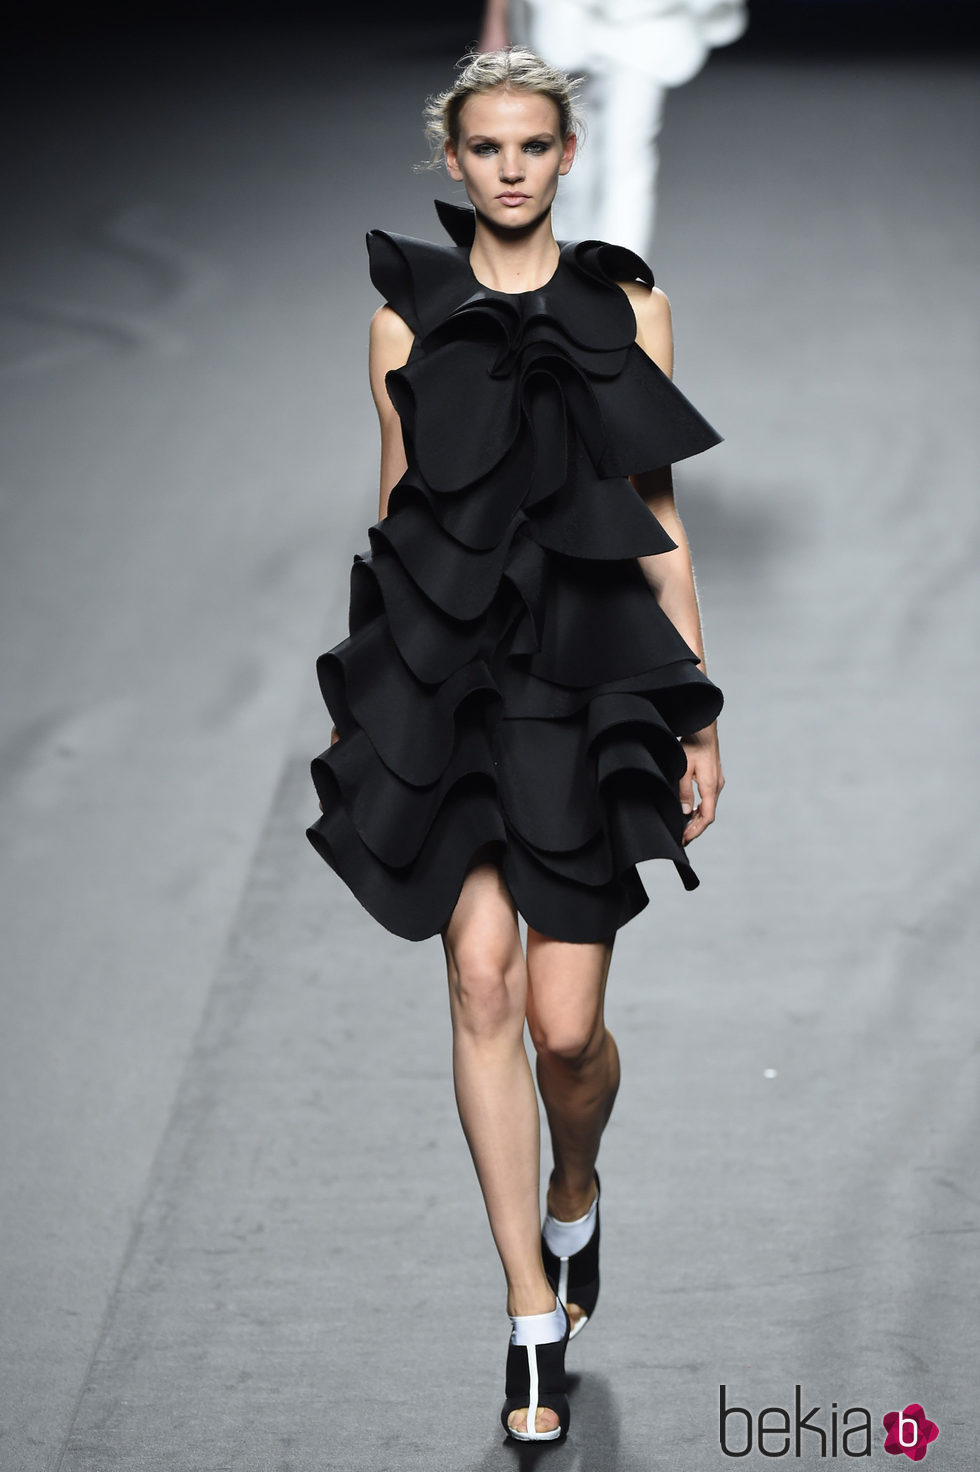 Vestido negro de volantes de Amaya Arzuaga para primavera/verano 2015 en Madrid Fashion Week